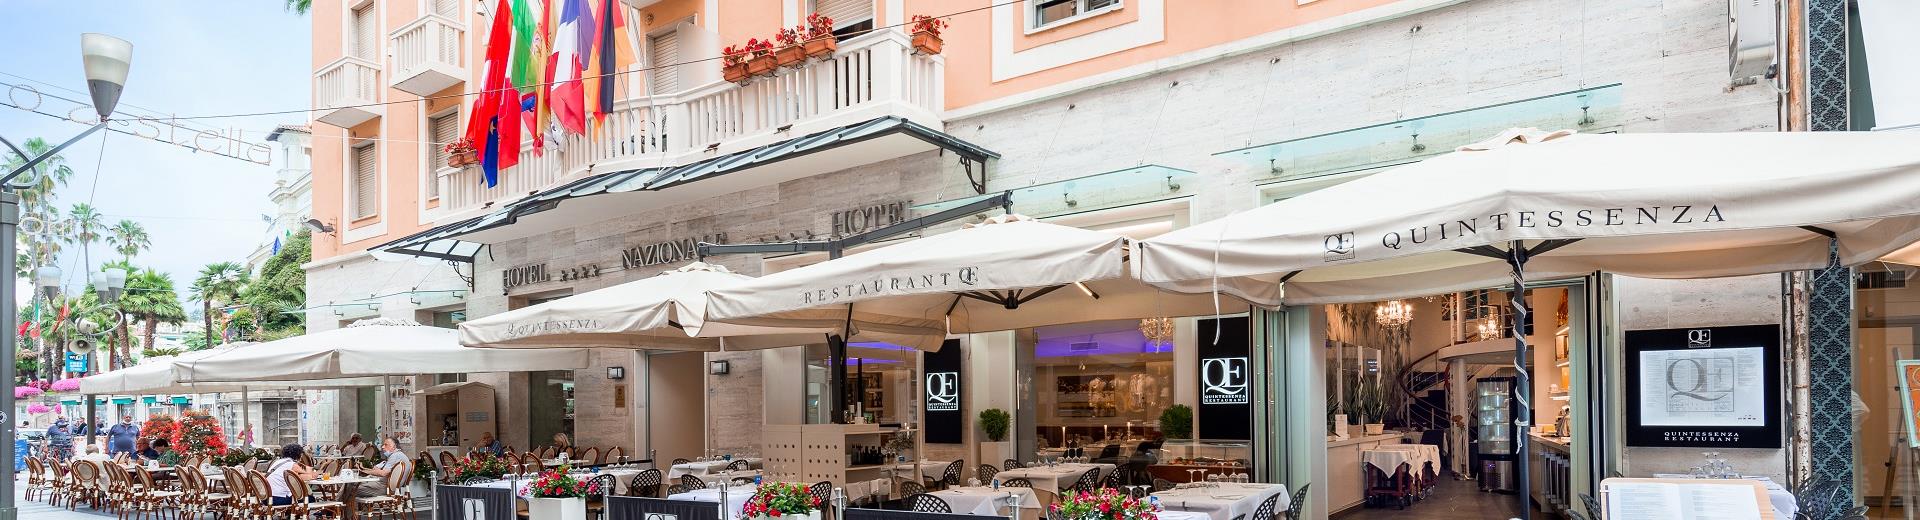 Prova le specialità del nostro ristorante a Sanremo centro